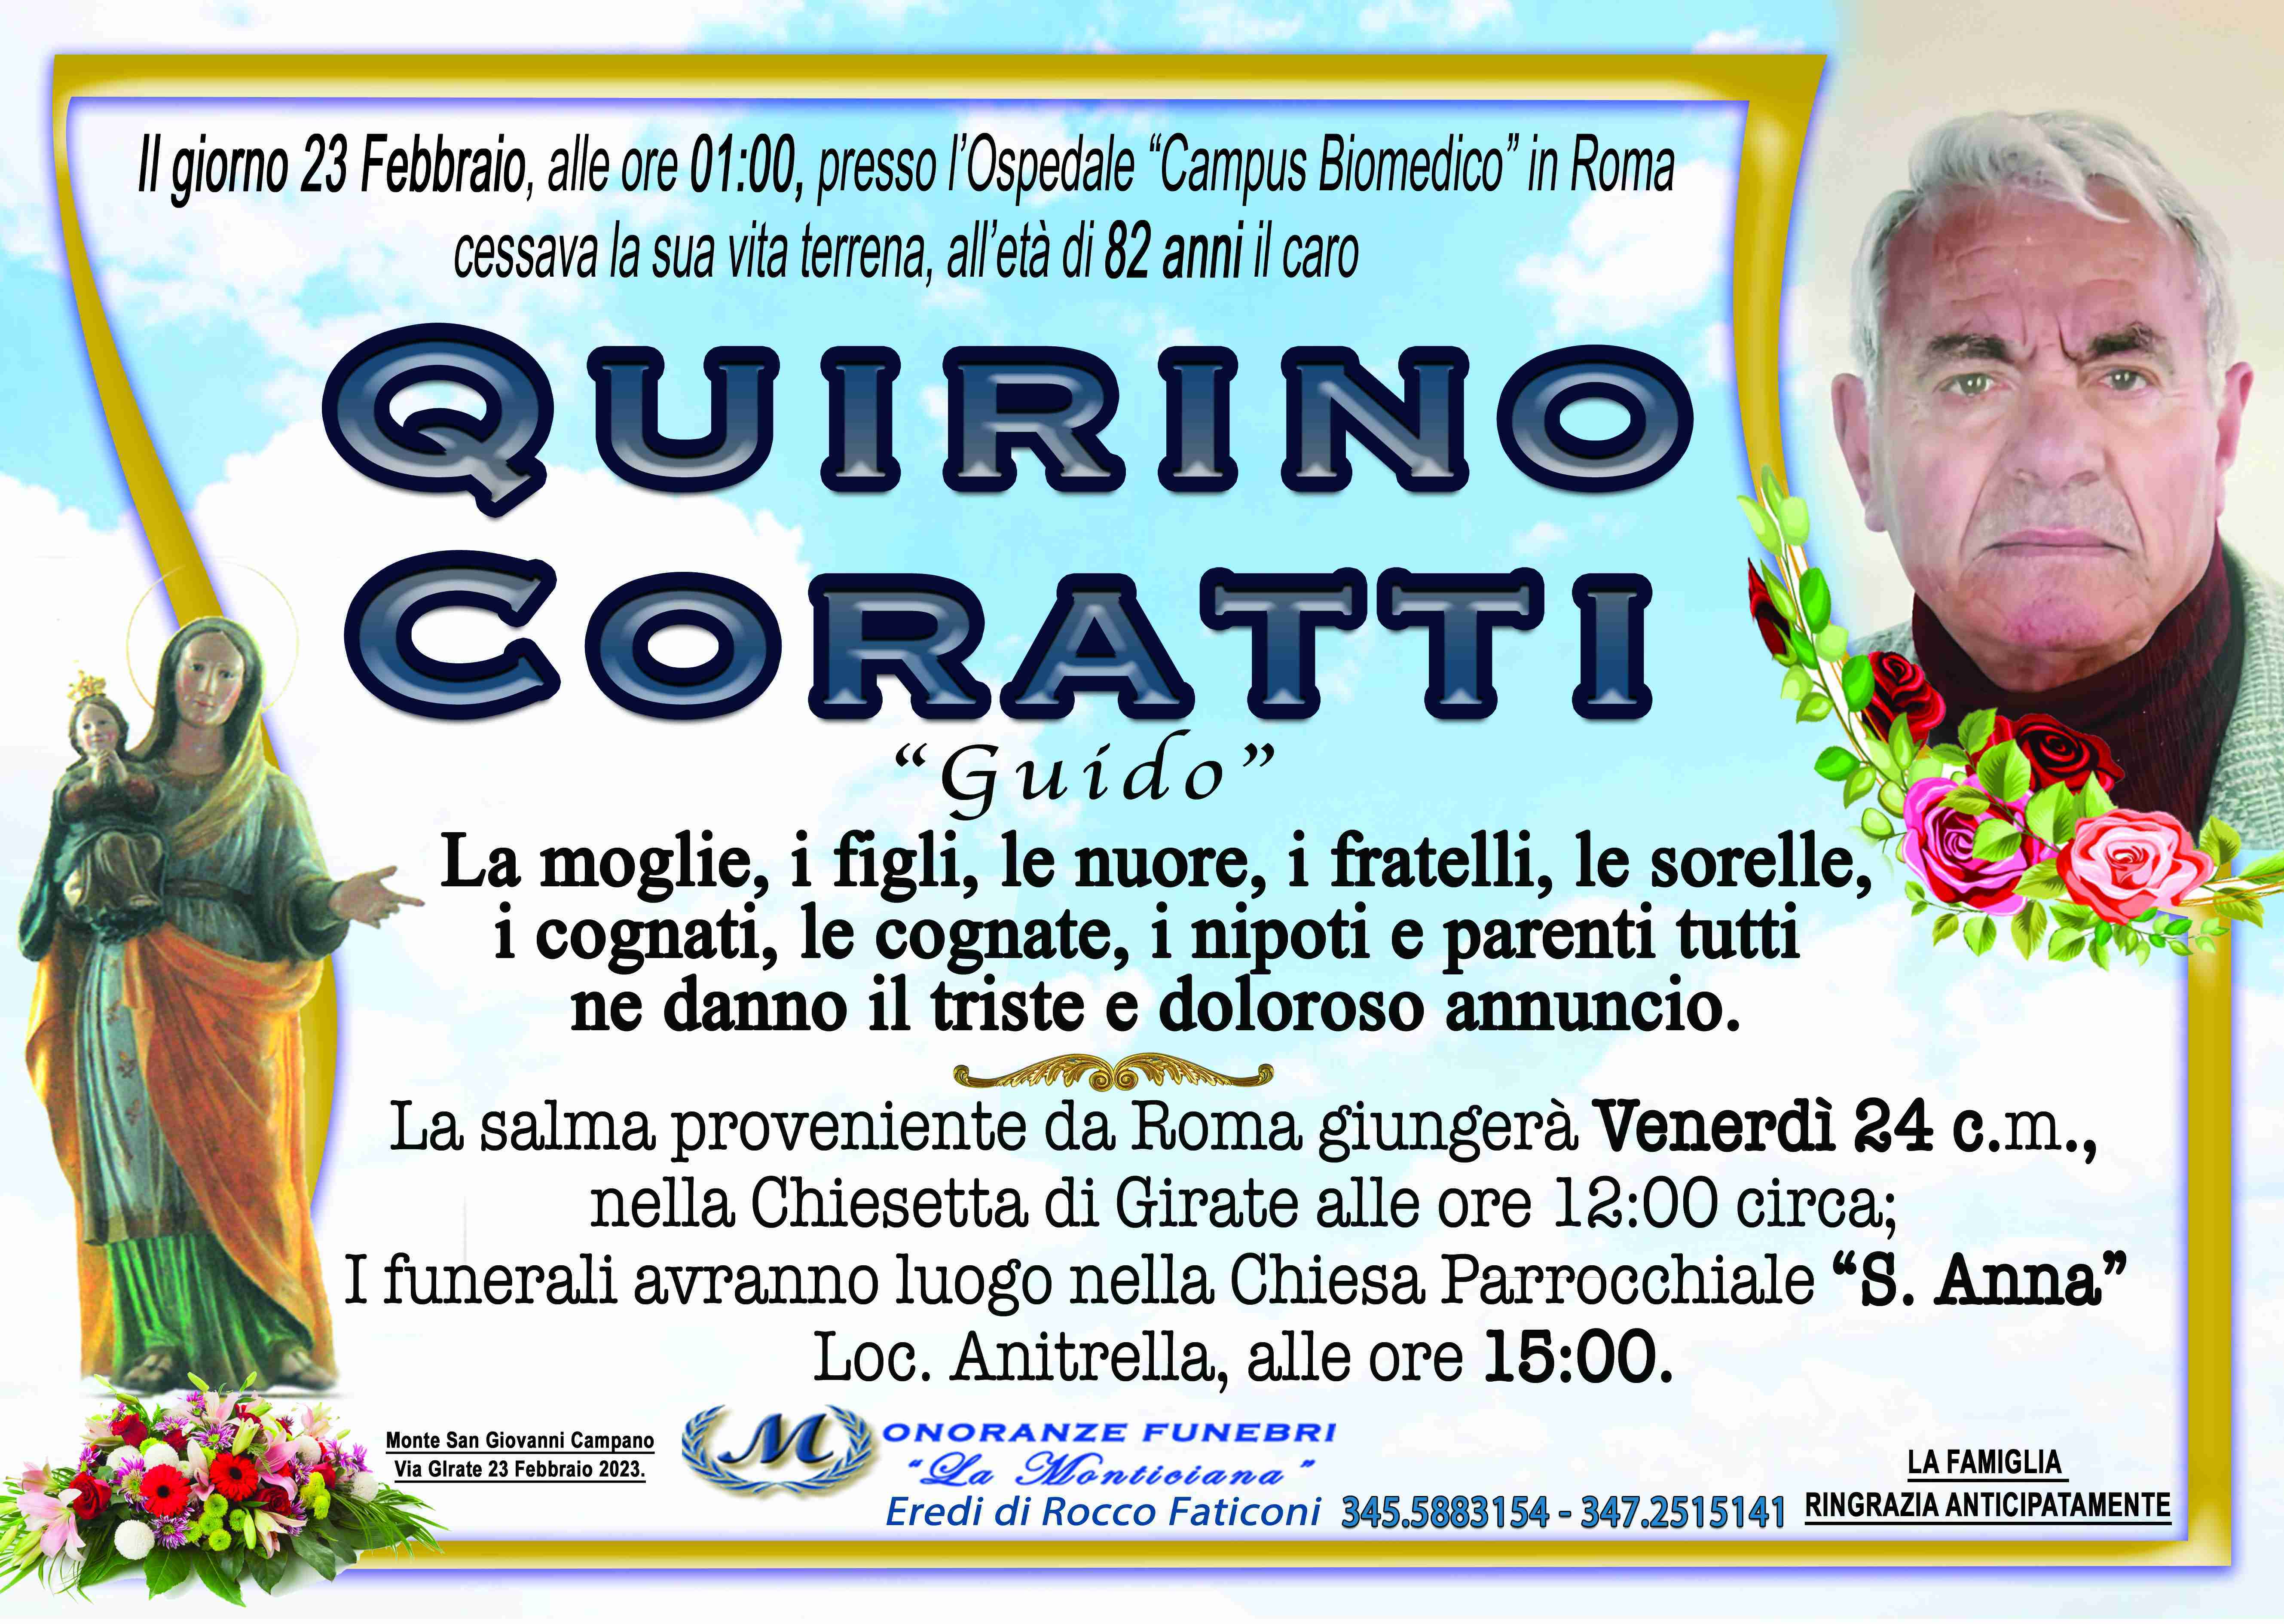 Quirino Coratti